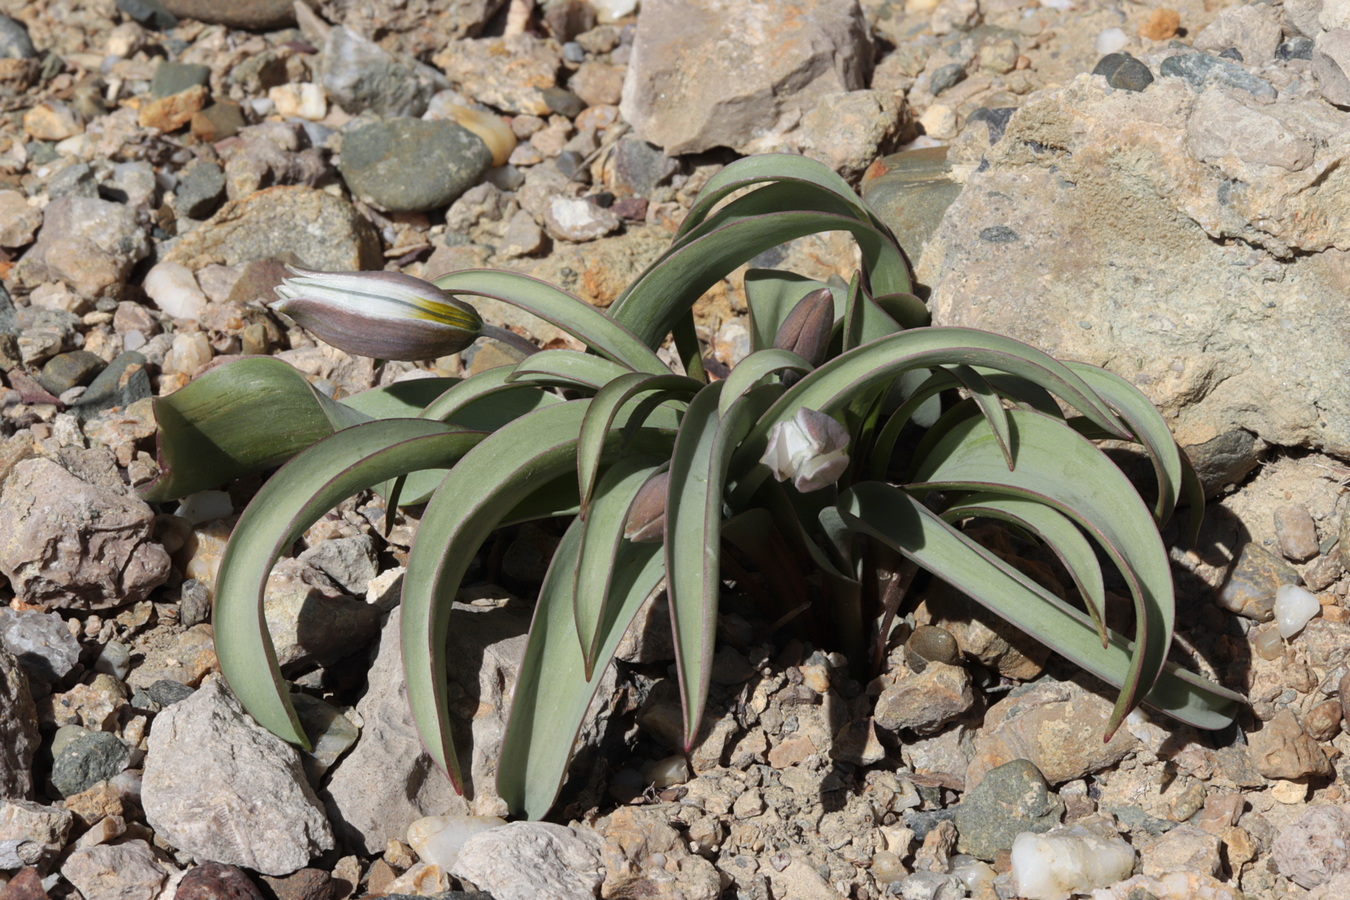 Image of Tulipa biflora specimen.